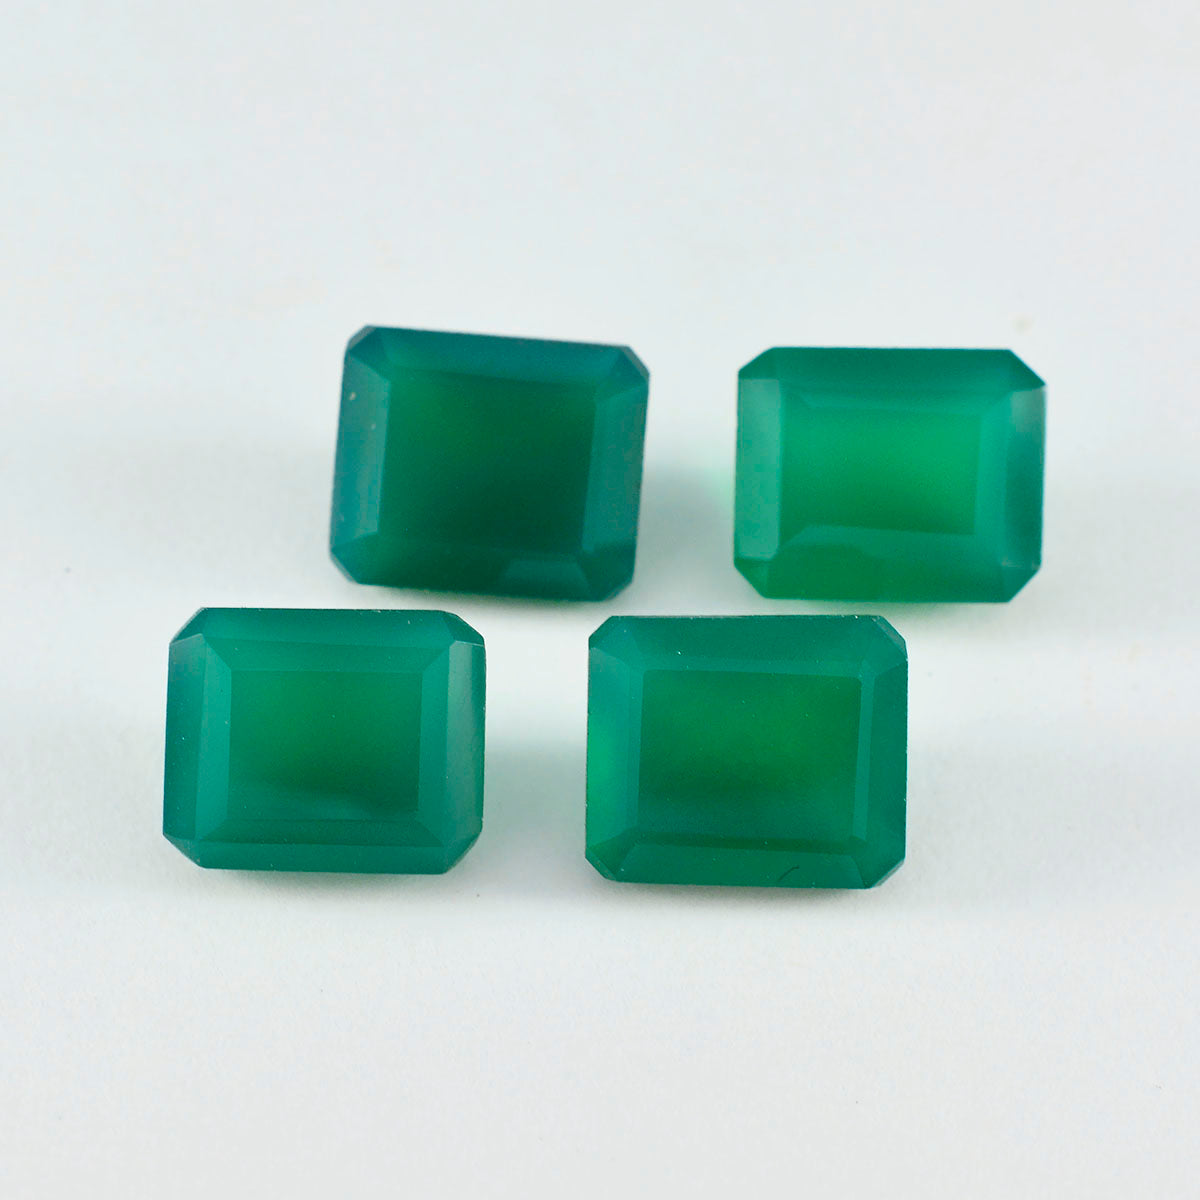 Riyogems 1PC Genuine Green Onyx Faceted 8x10 mm Octagon Shape A+ Quality Gems